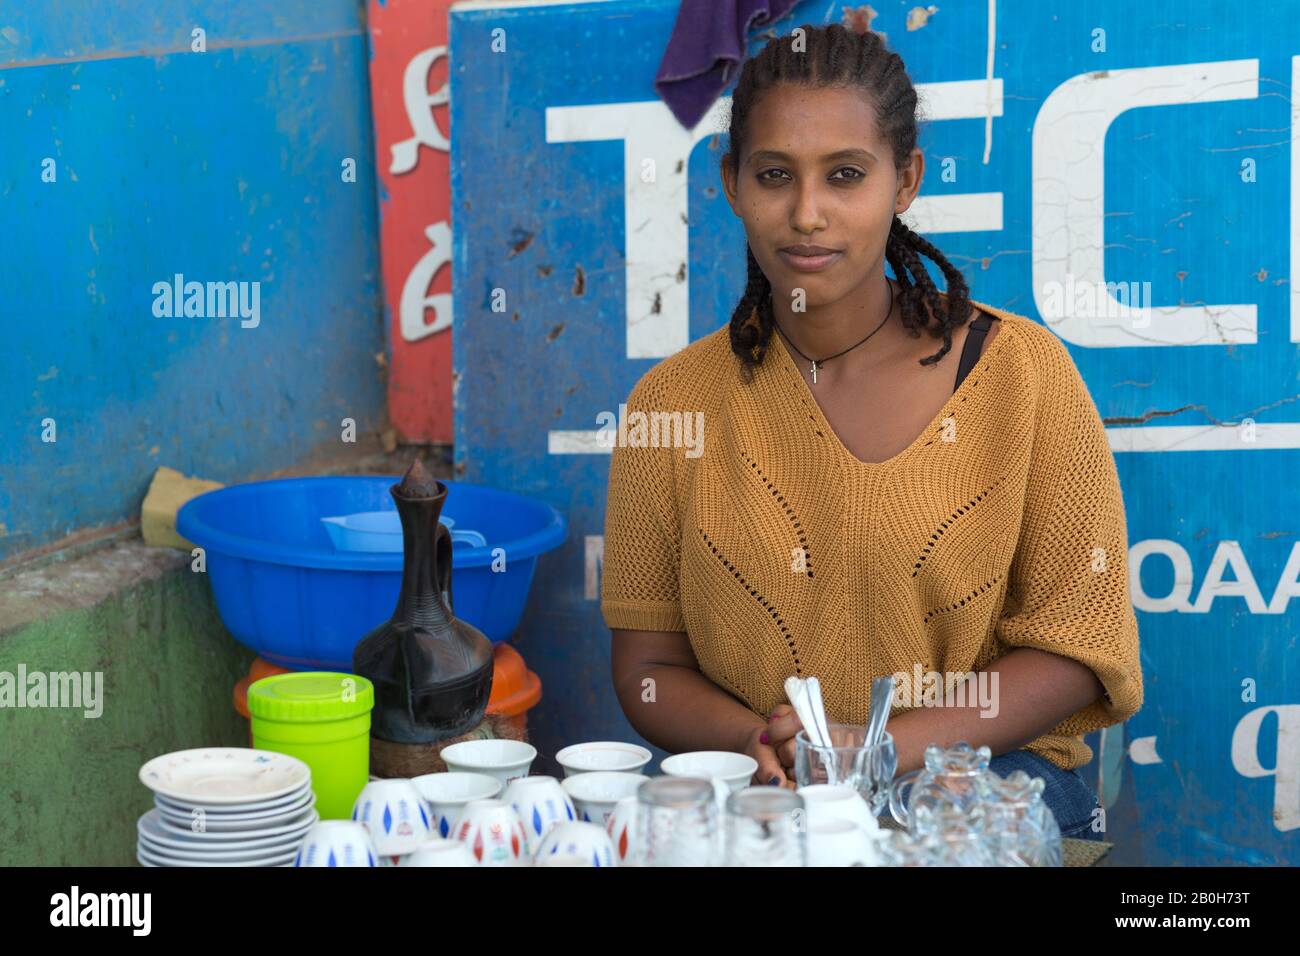 02.11.2019, Adama, Oromiyaa, Ethiopie - café traditionnel de rue. Personne déplacée à l'intérieur du pays (IDP) de la région d'Amhara soutenue par Le Bt Banque D'Images